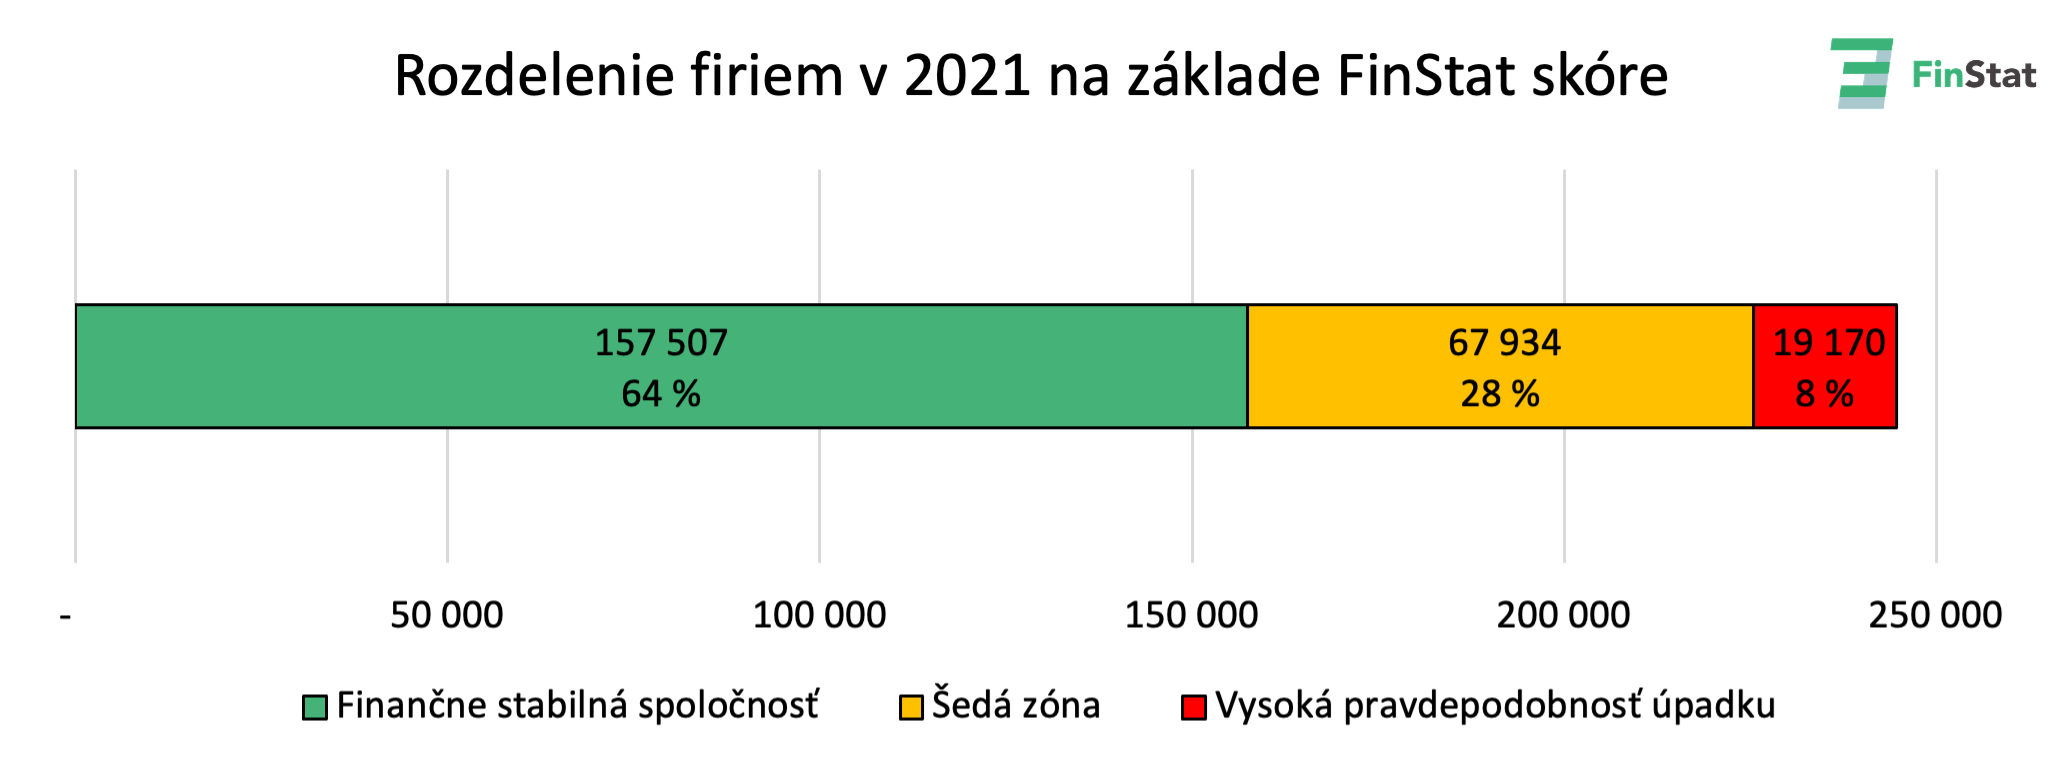 Rozdelenie firiem v 2021 na základe FinStat skóre